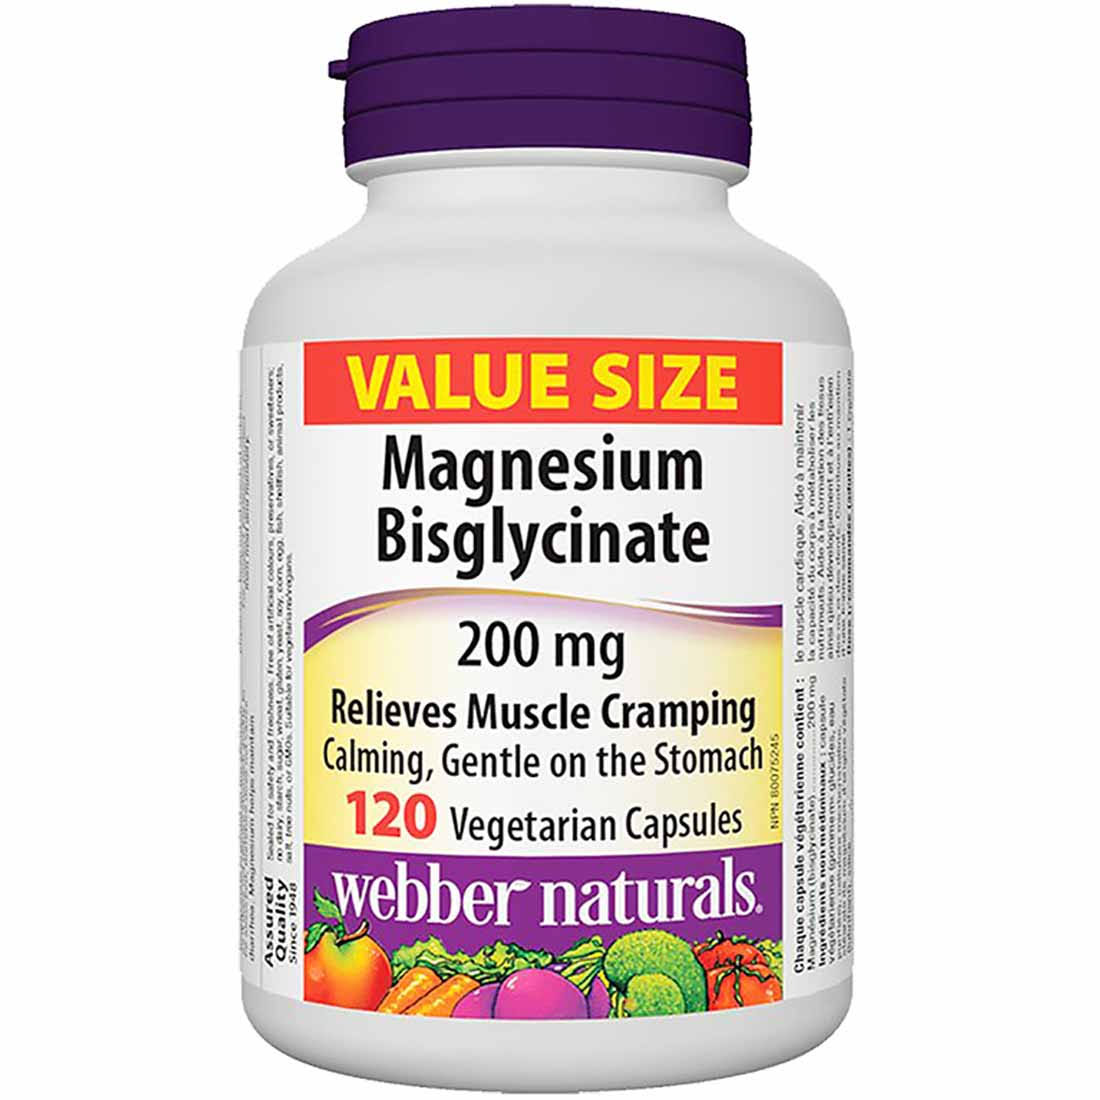 Webber Naturals Magnesium Bisglycinate 200mg Value Size